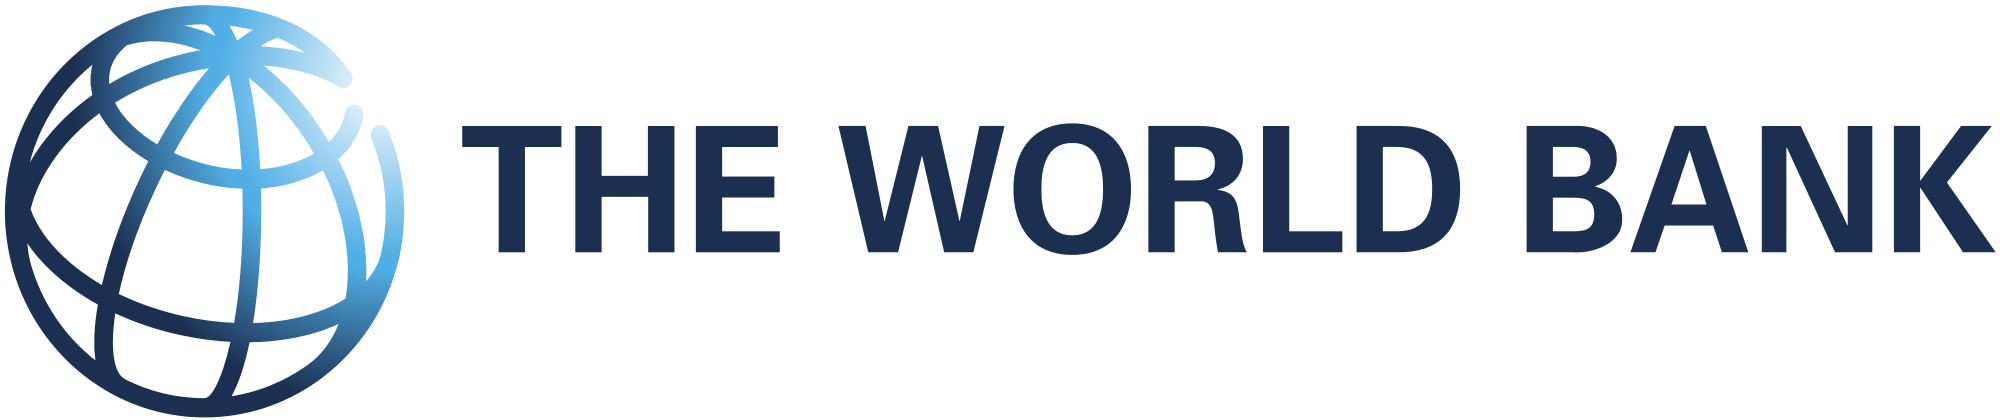 World Bank Logo - The World Bank logo.svg